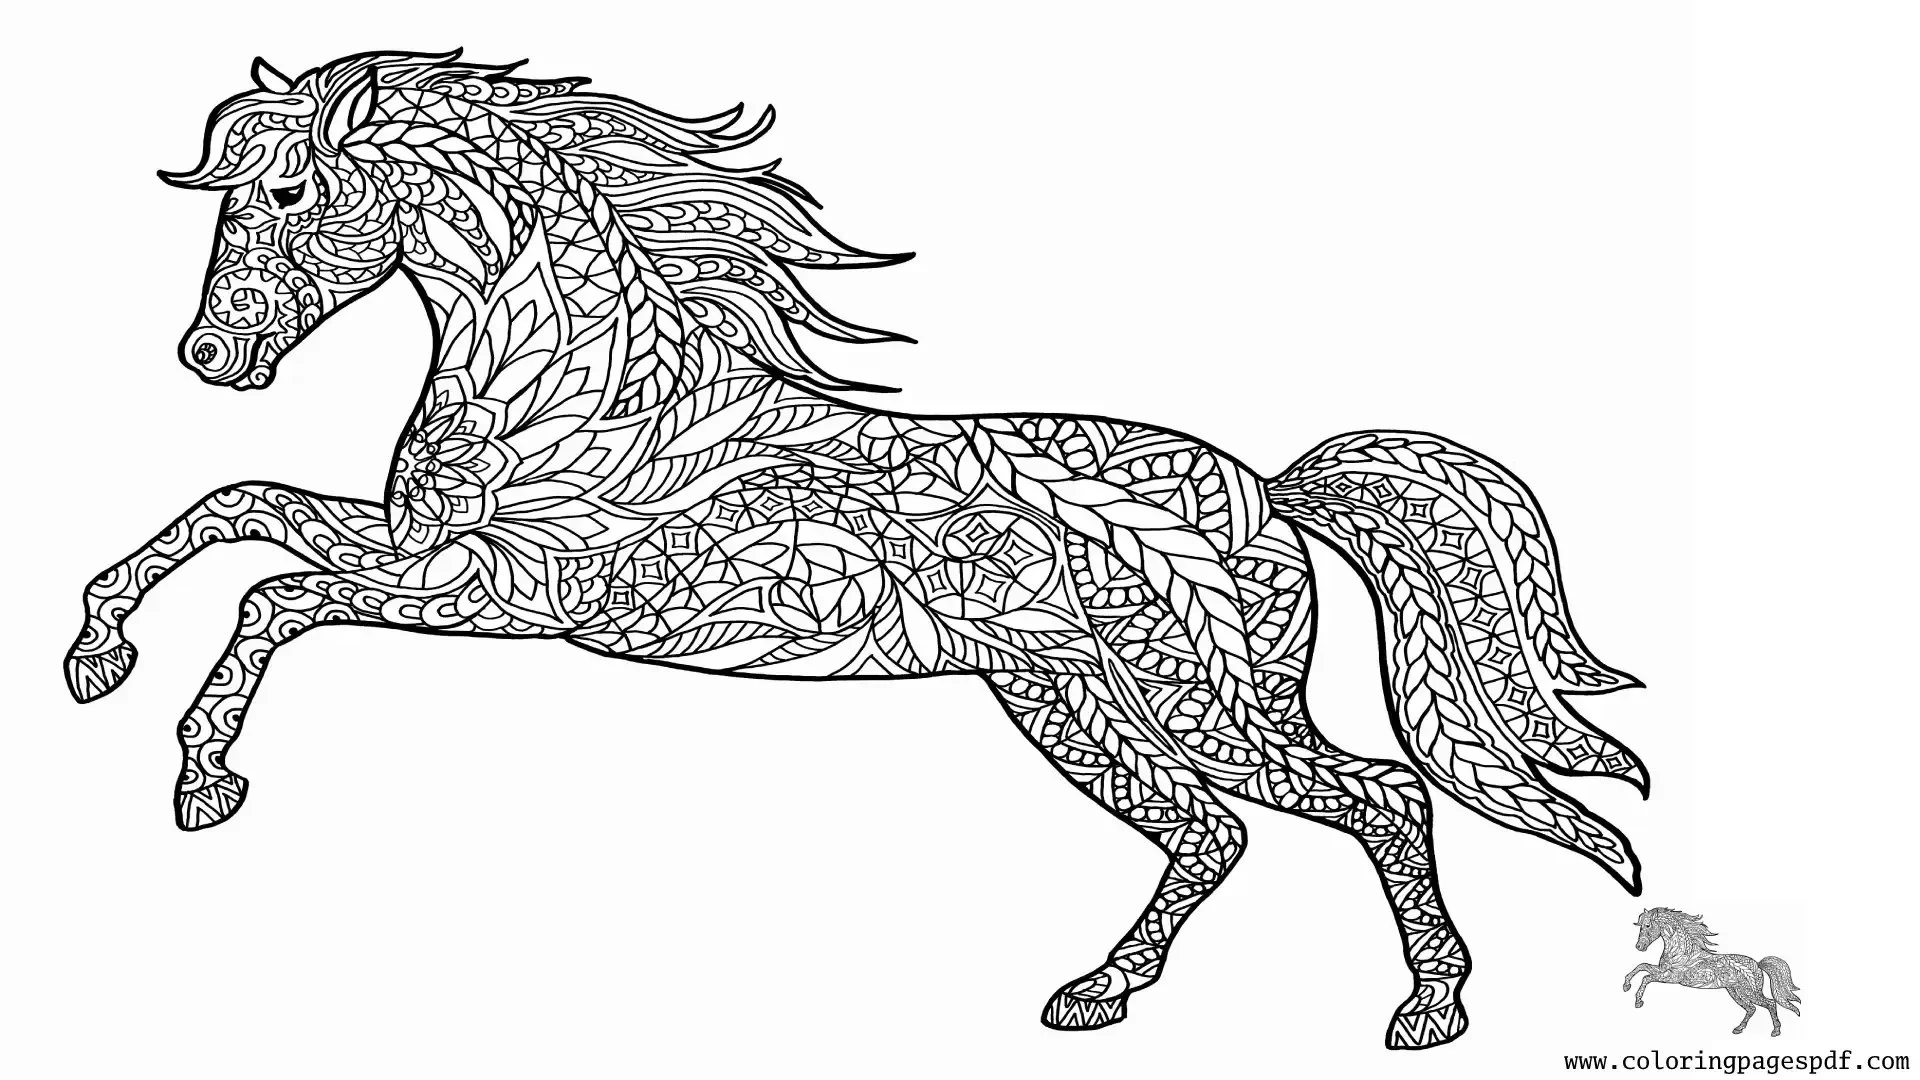 Coloring Page Of A Rearing Horse Mandala